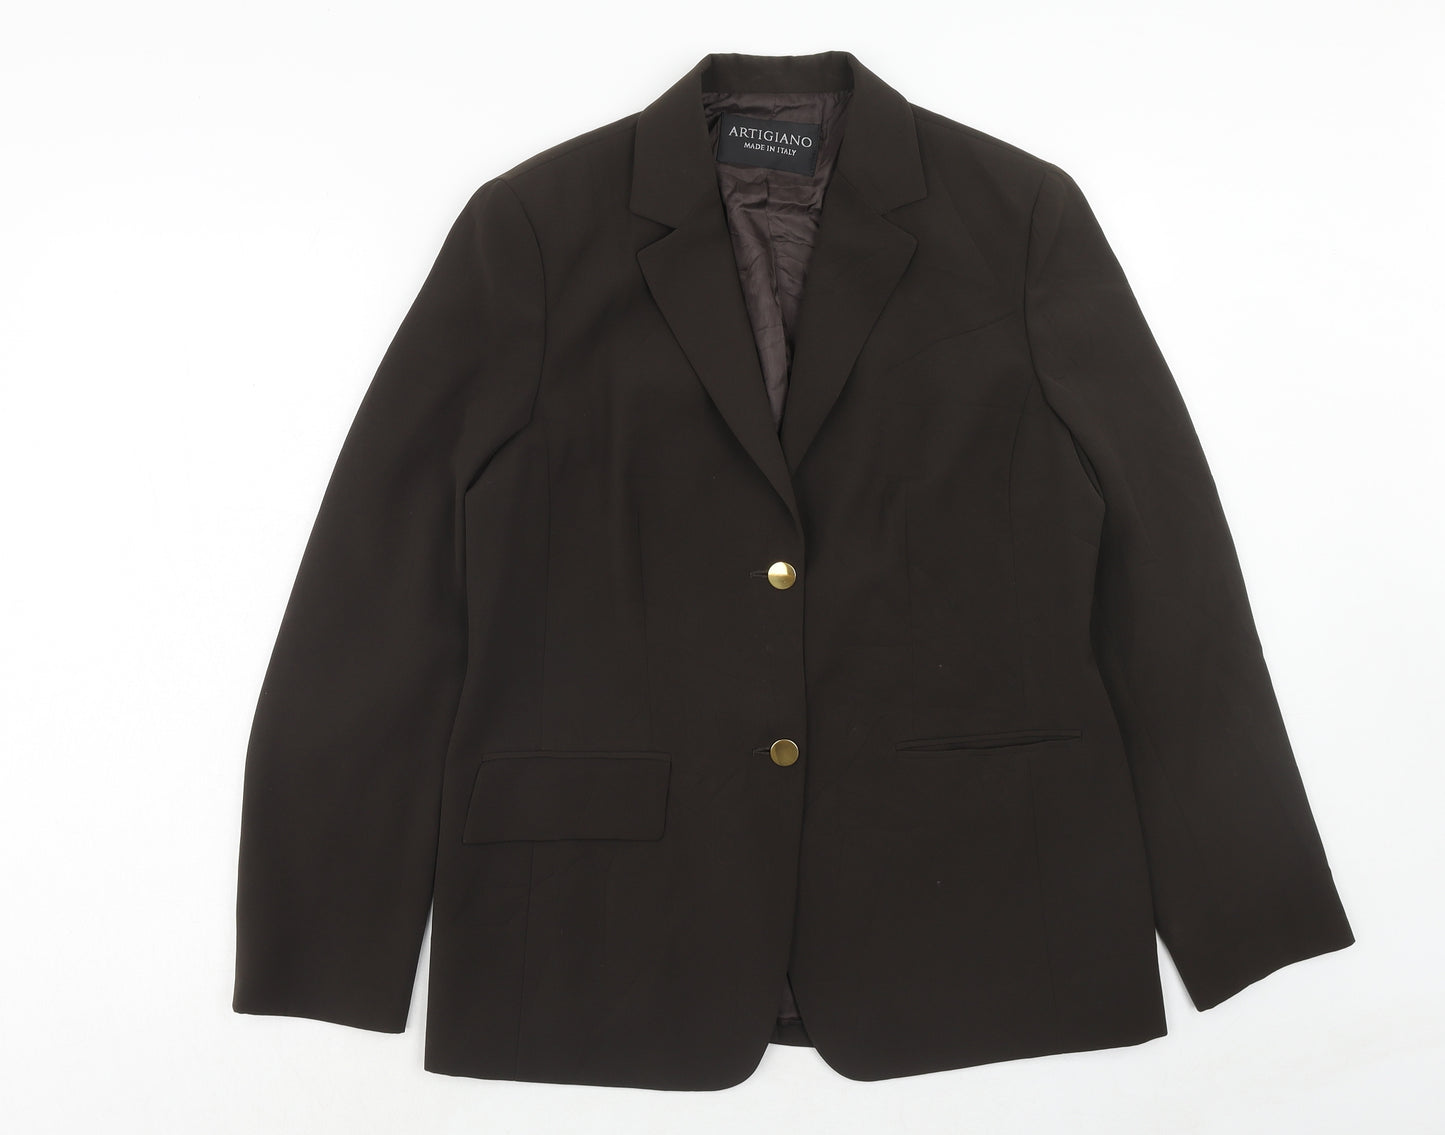 Artigiano Womens Beige Polyester Jacket Suit Jacket Size 14